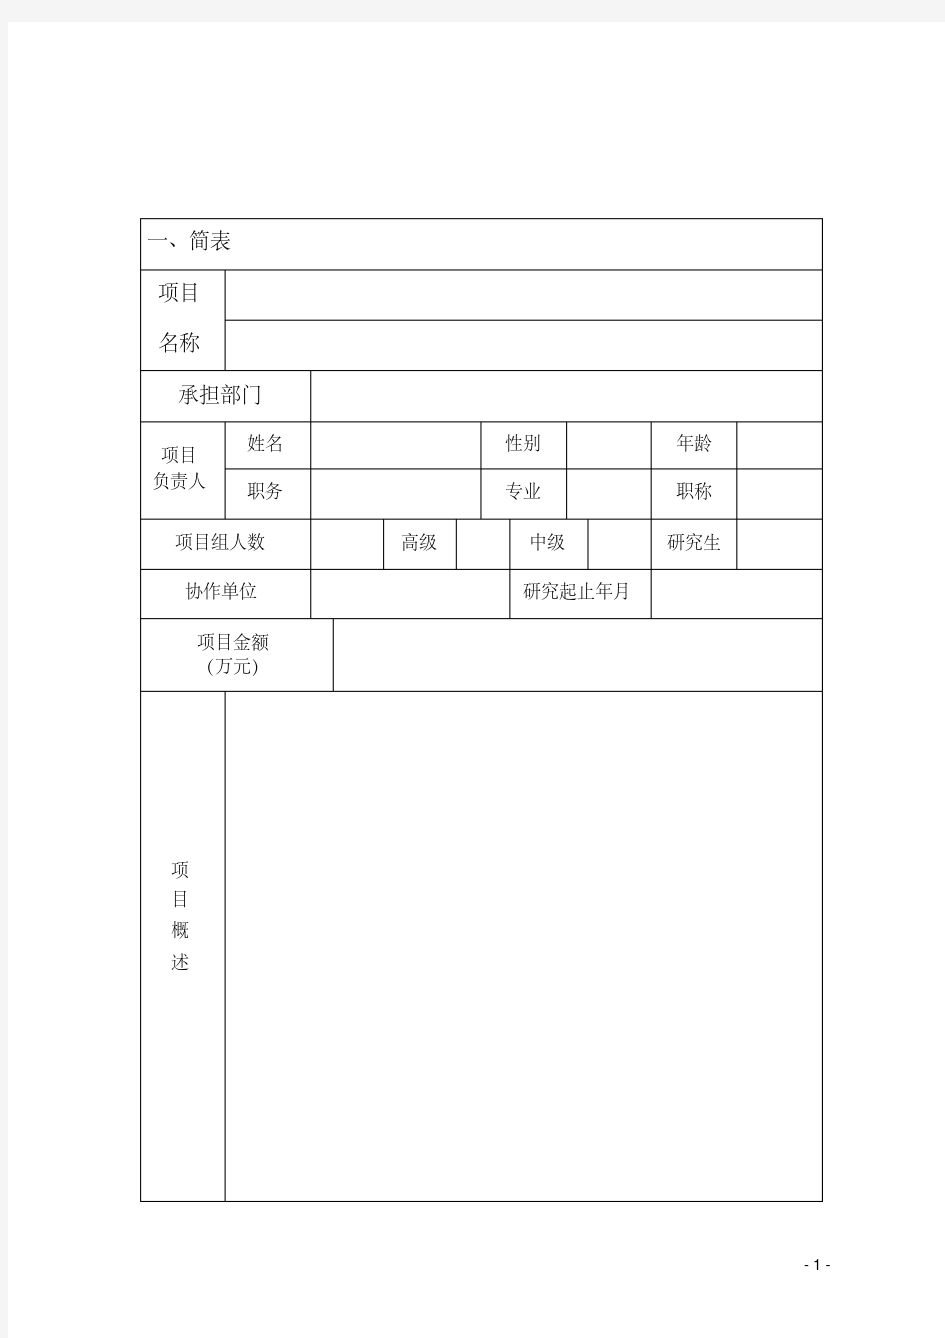 新版研发产品立项申请书.pdf